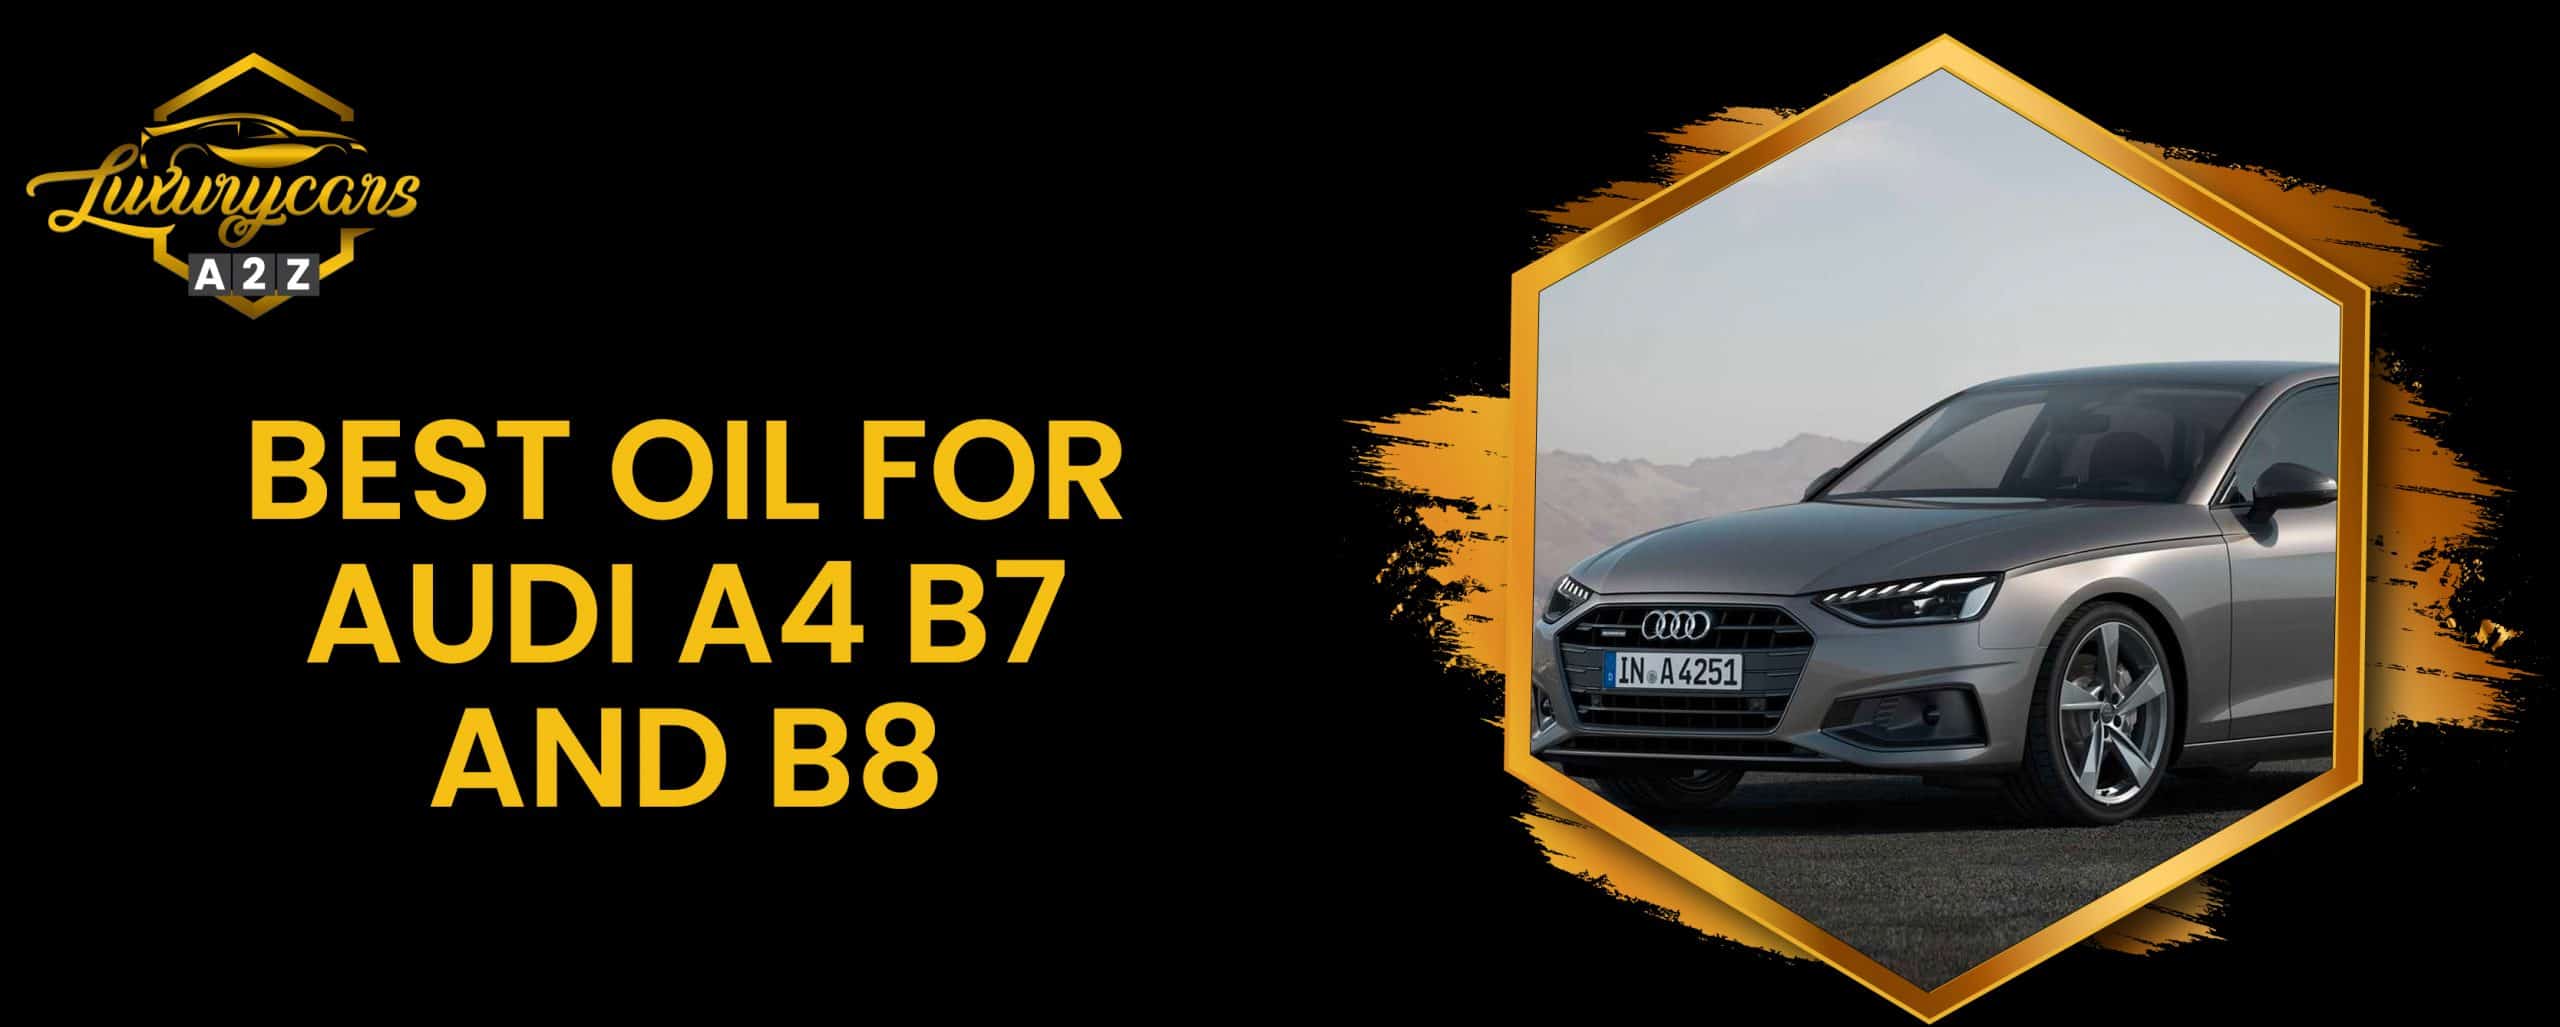 Meilleure huile pour Audi A4 B7 et B8